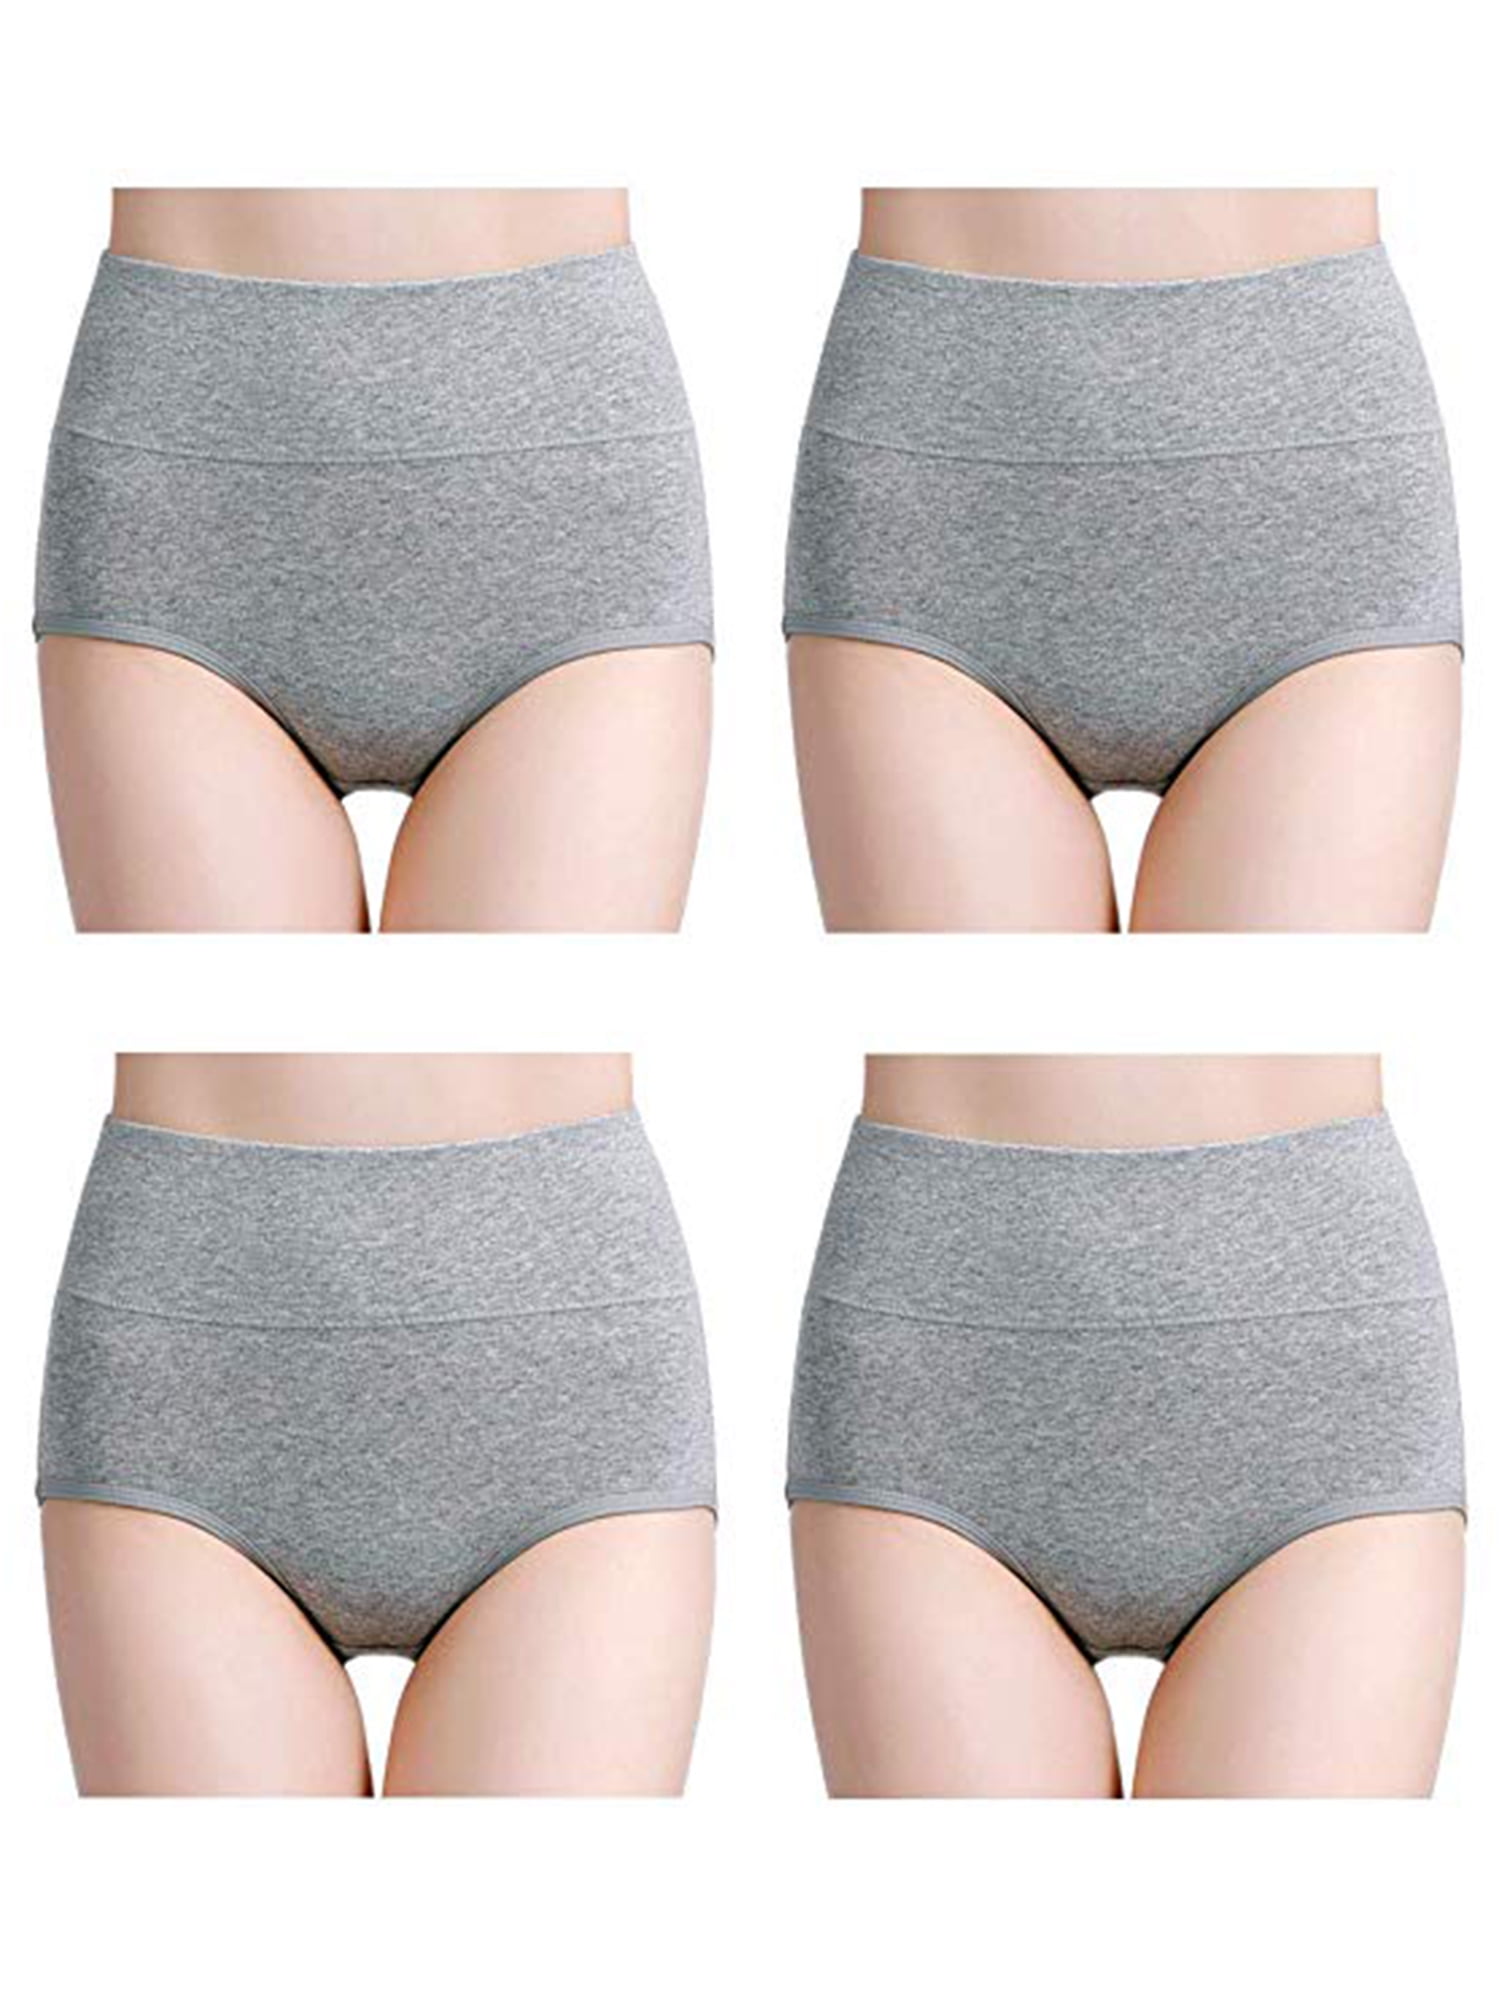 wirarpa Ladies Underwear Cotton Full Briefs High Waist Knickers Underwear Panties for Women Multipack